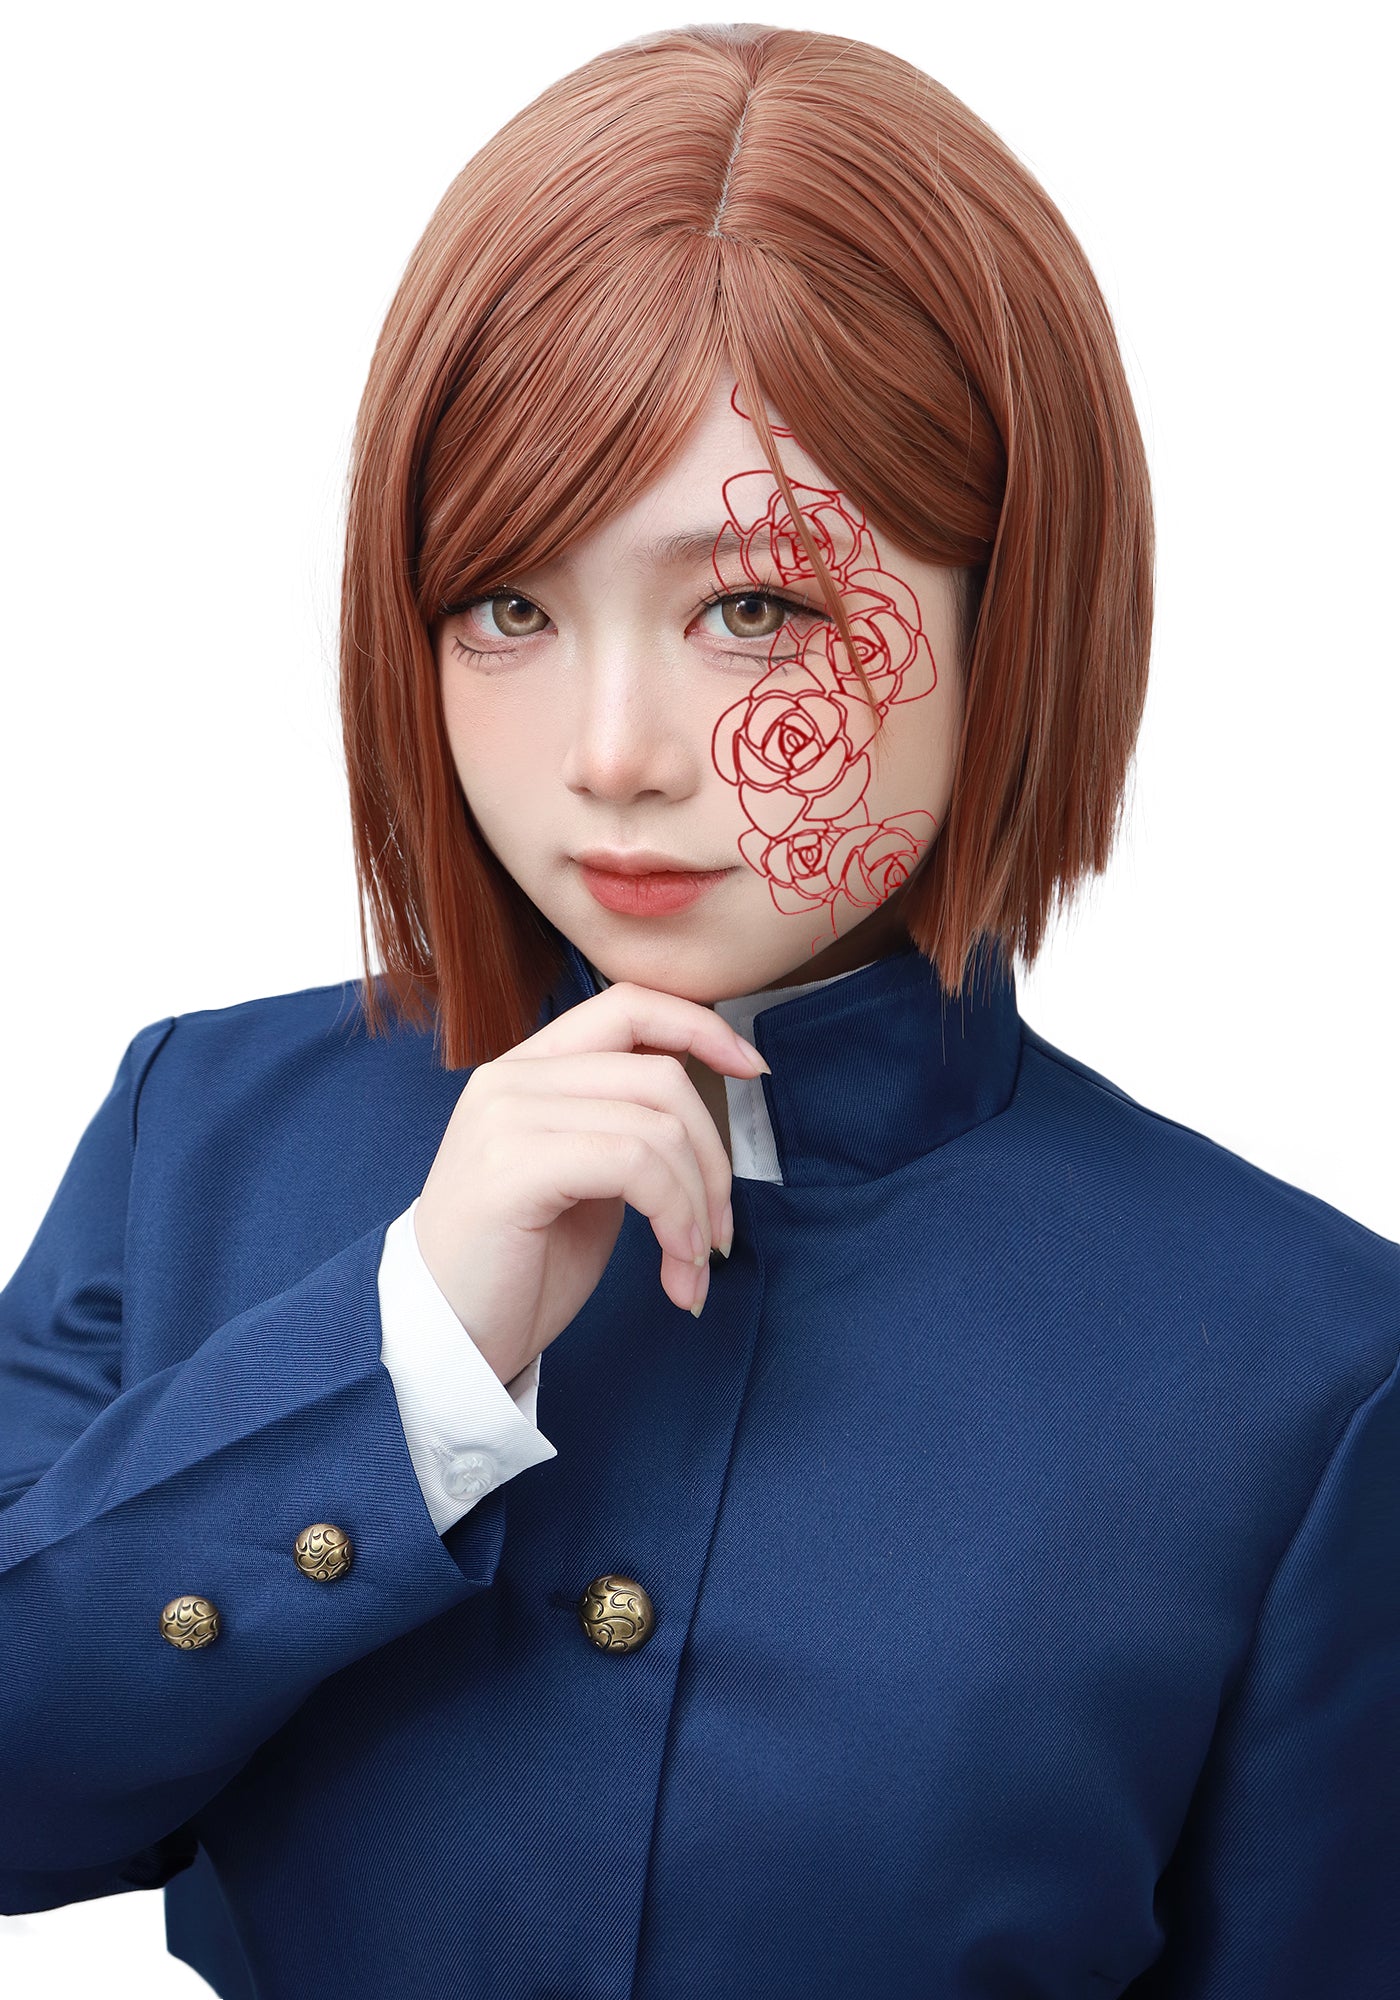 Jujutsu Kaisen Kugisaki Nobara Cosplay Wig with Stickers for Anime Costume